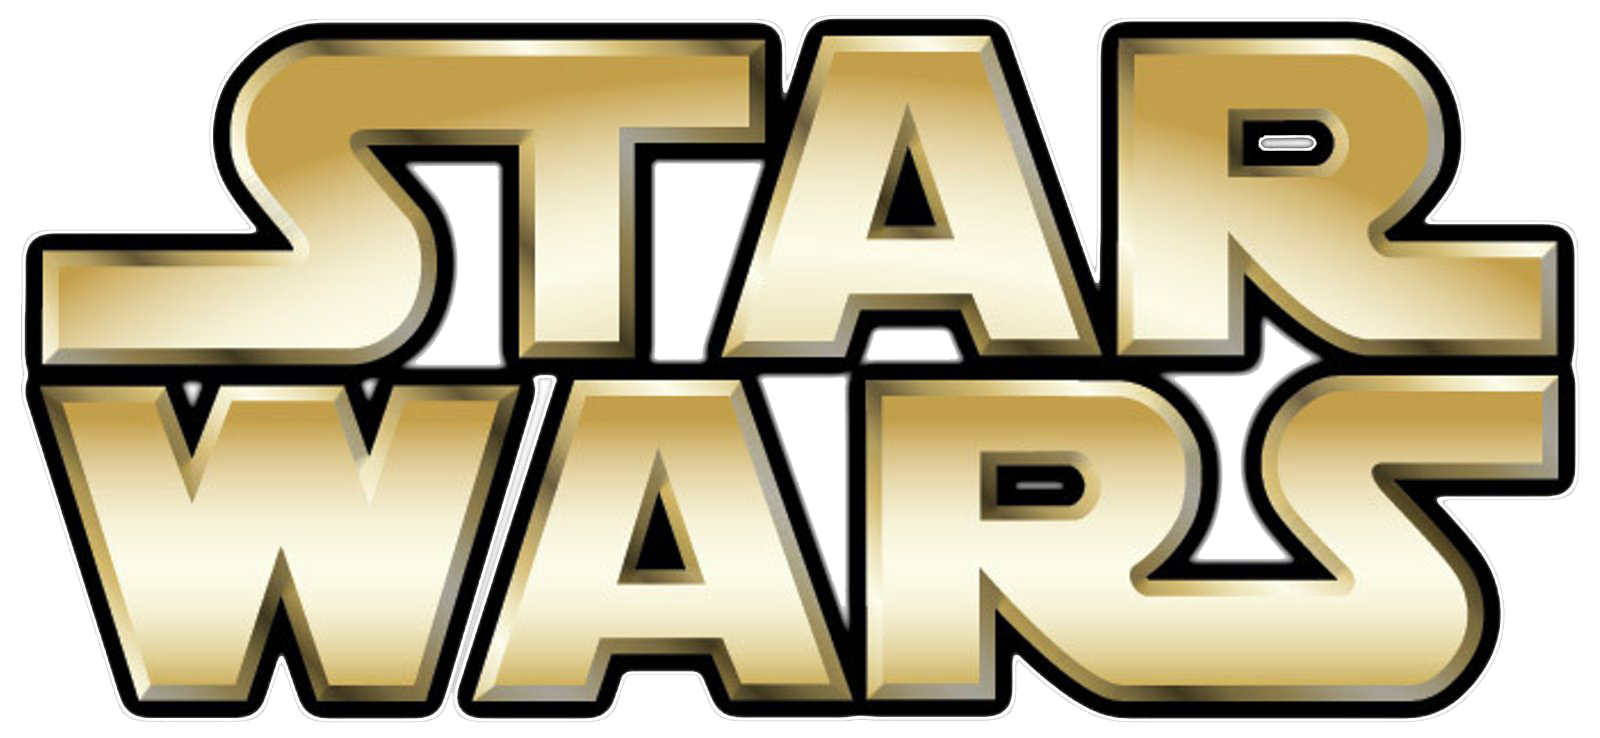 Star Wars Logo File PNG Image